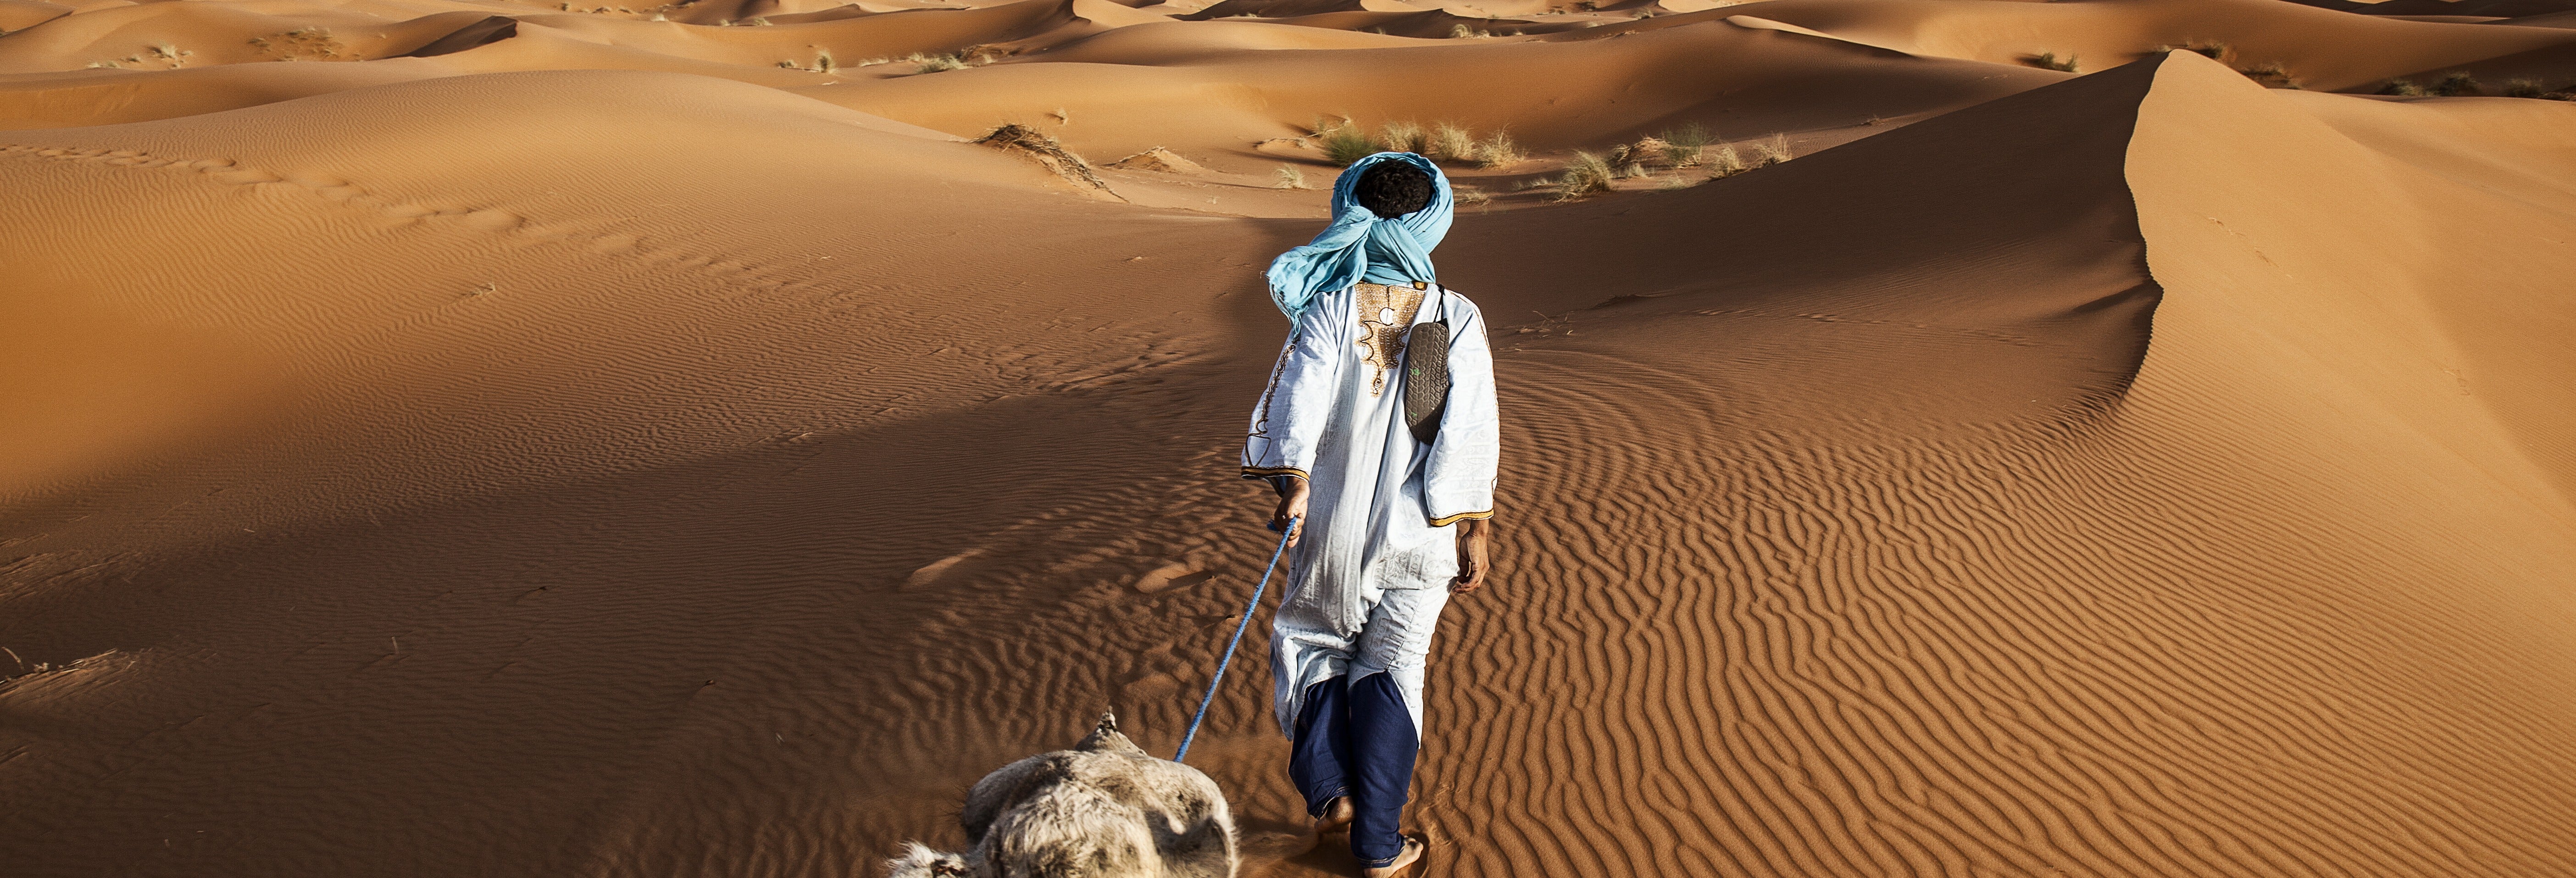 Excursão de 4 dias ao deserto de Merzouga